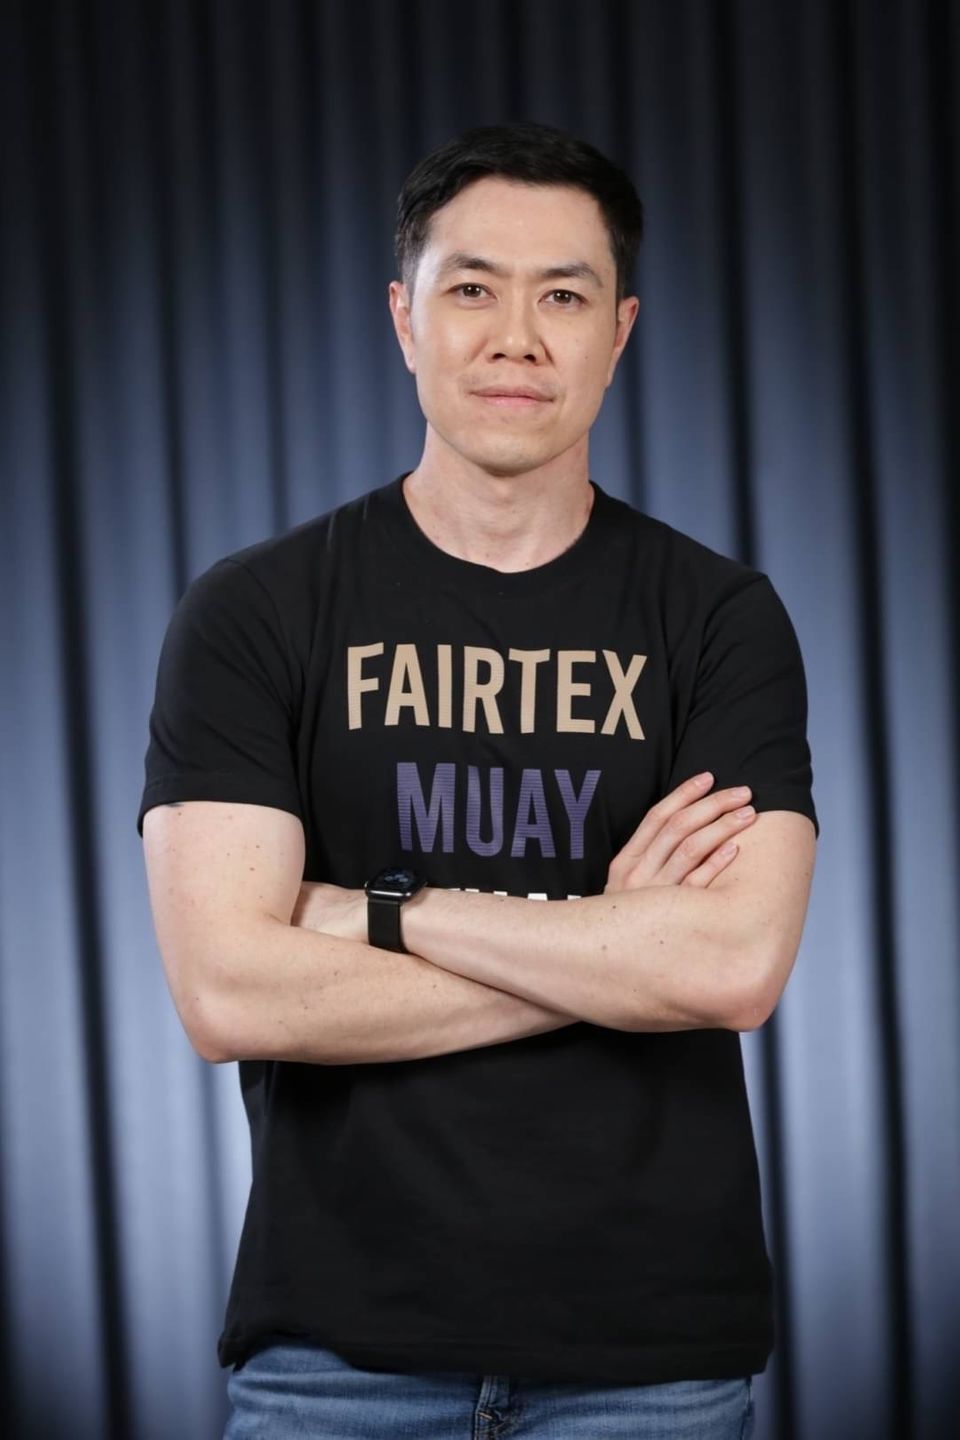 ผุดโปรเจคยักษ์ “แฟร์เท็กซ์ไฟท์” จับมือ “ไทวัสดุ”  FAIRTEX FIGHT X THAIWATSADU CHAMPIONS ปั้นดาวรุ่งมวยไทยส่งต่อยอดระดับโลก ซีซั่น 2